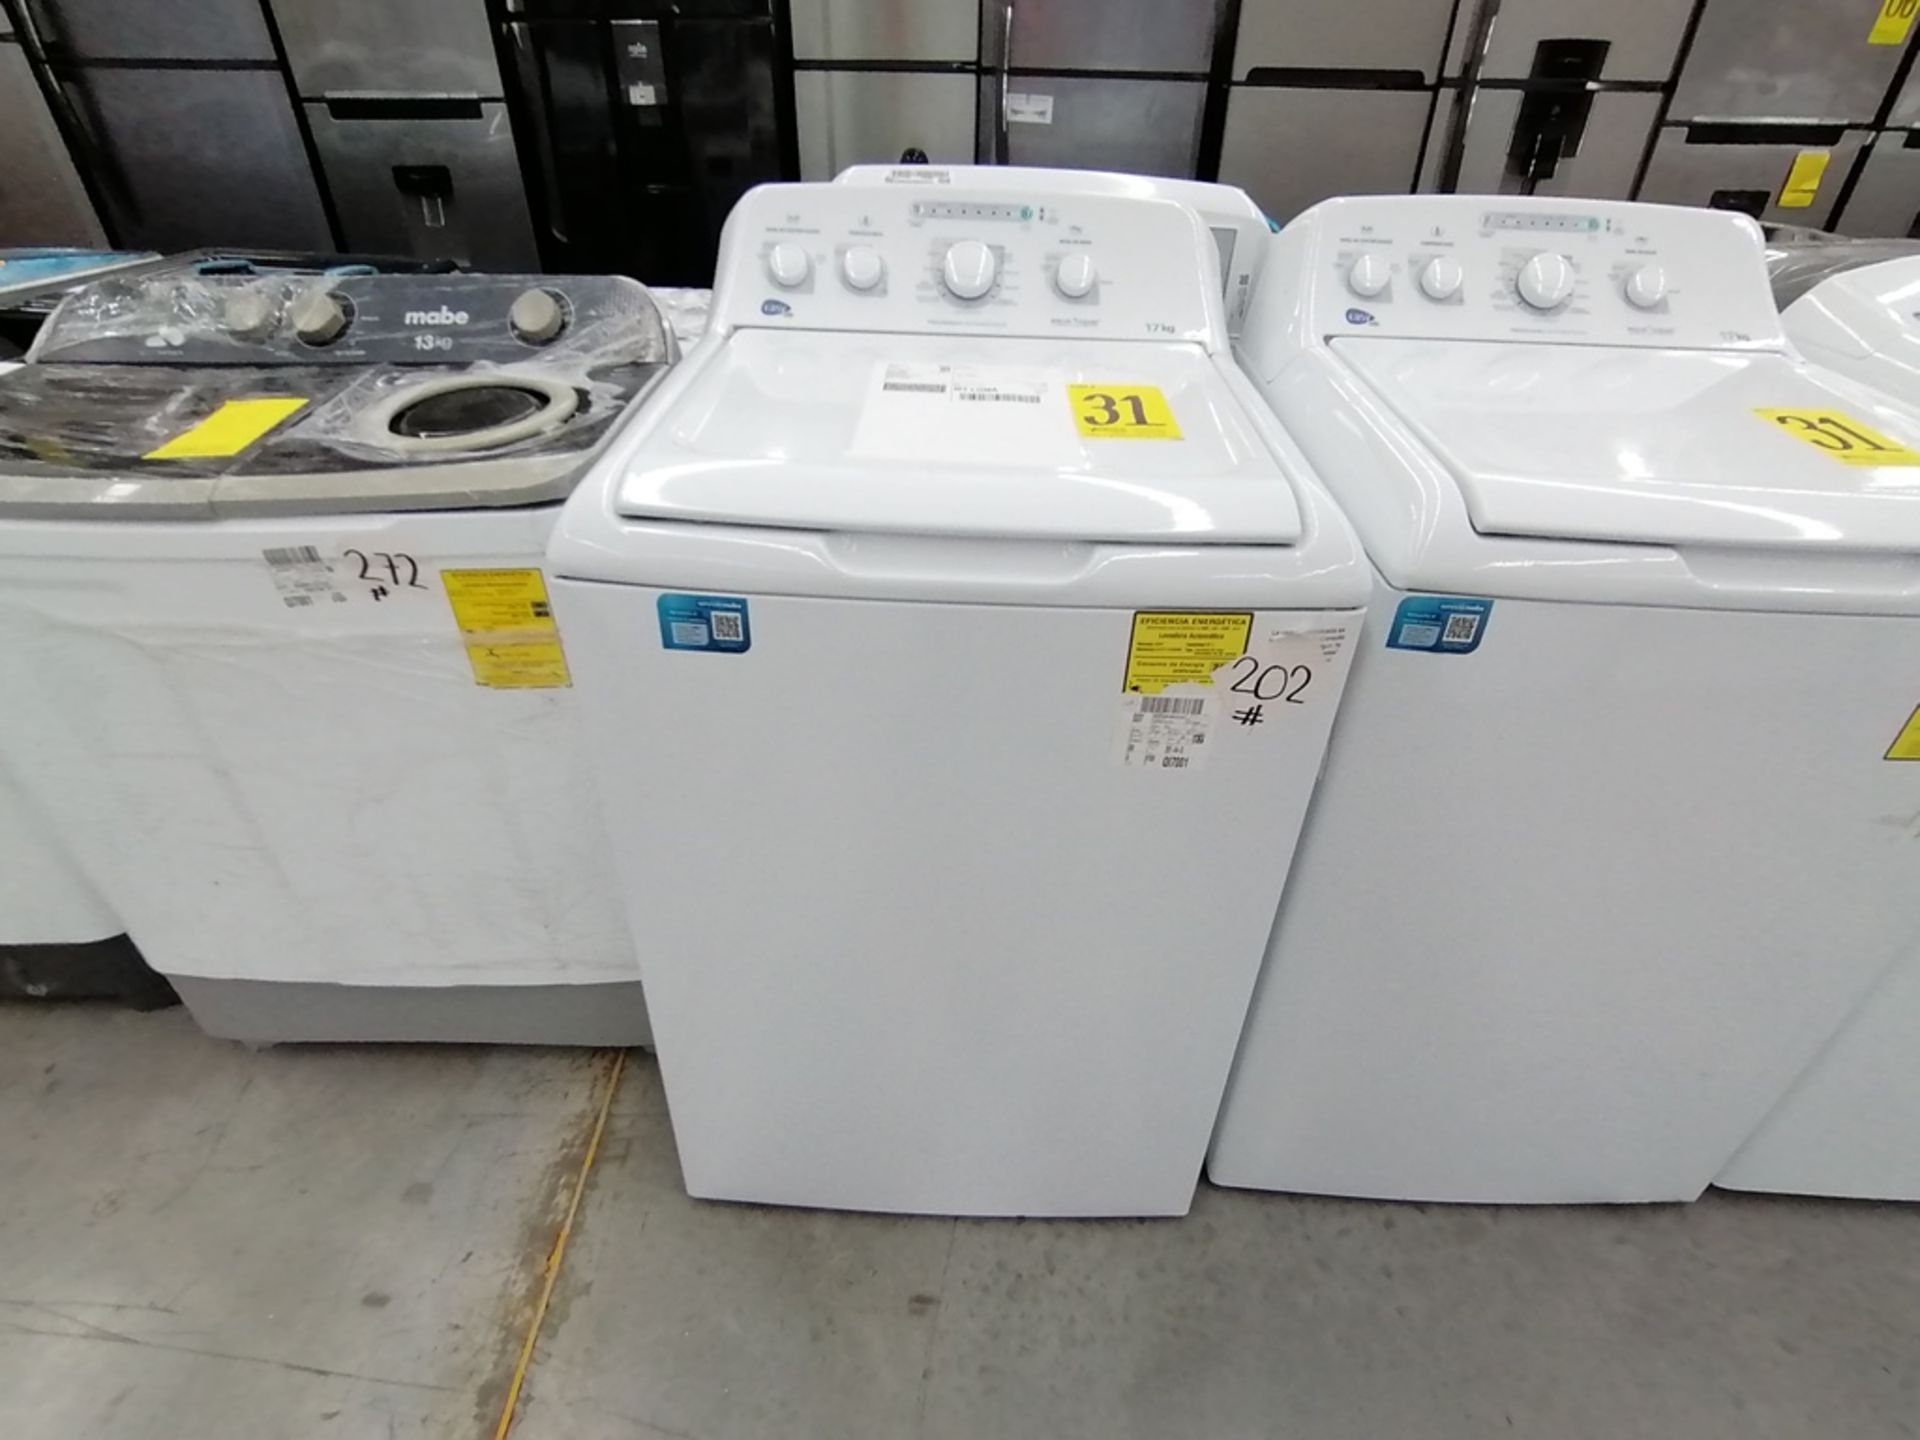 Lote de 3 lavadoras contiene: 1 Lavadora de 17KG, Marca Easy, Modelo LEA77114CBAB03, Serie 2105S522 - Image 25 of 30